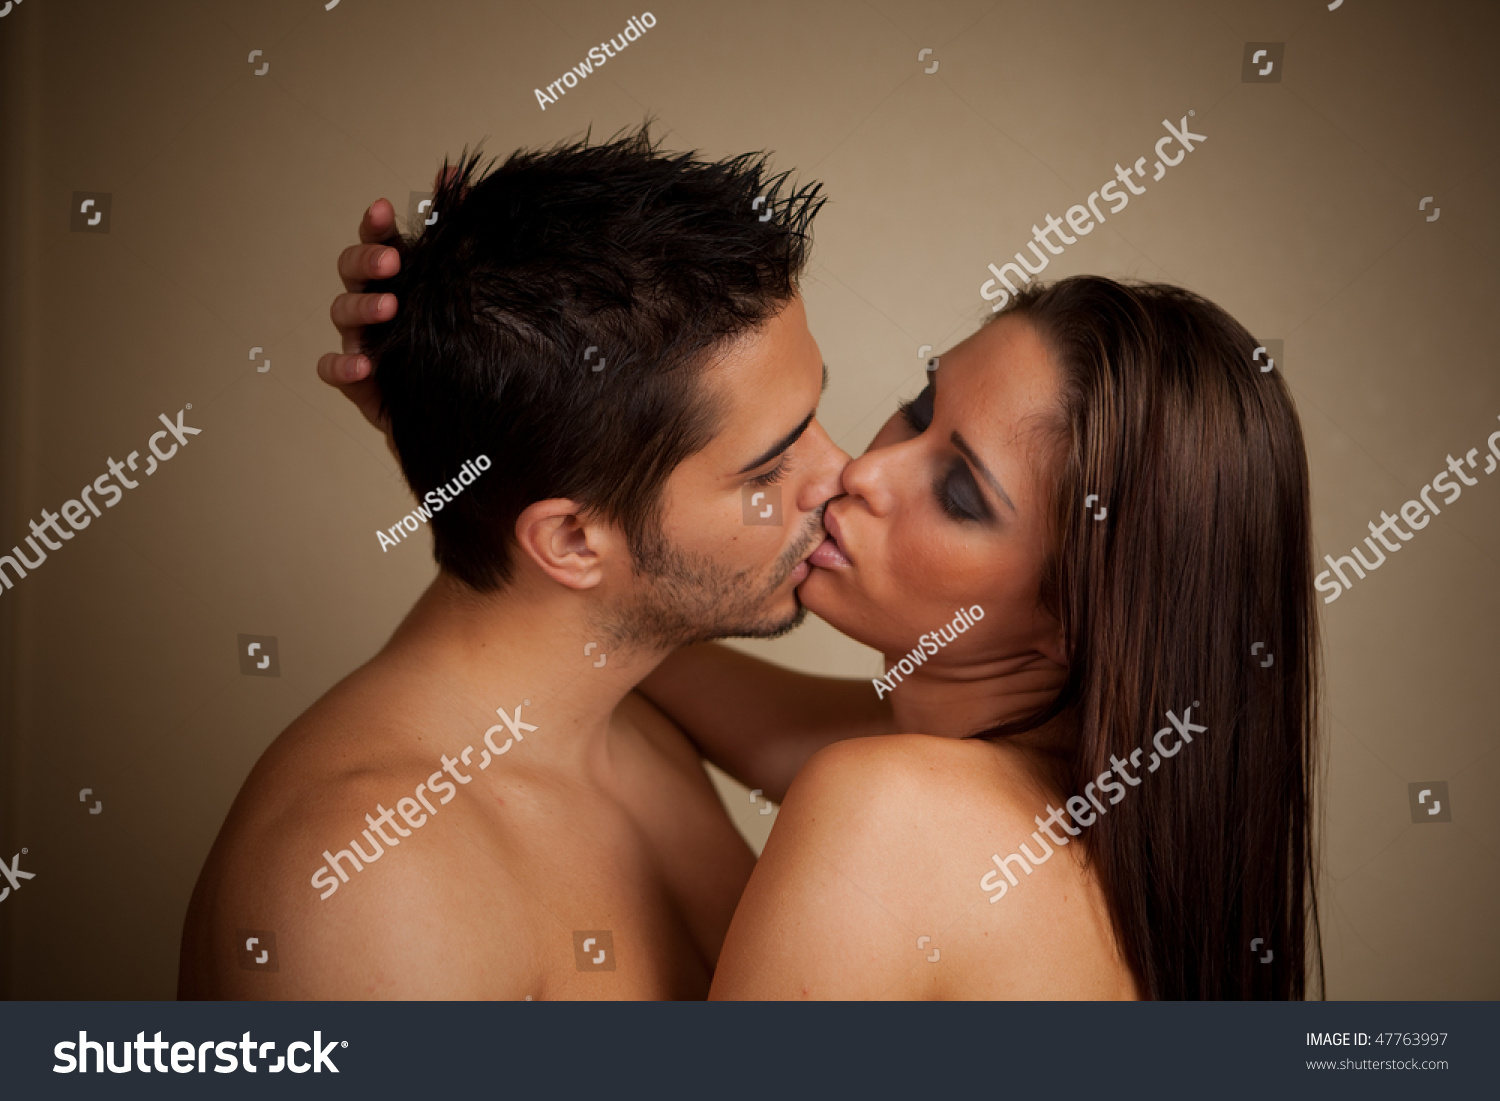 если девушка поцеловалась с девушкой это считается изменой фото 74